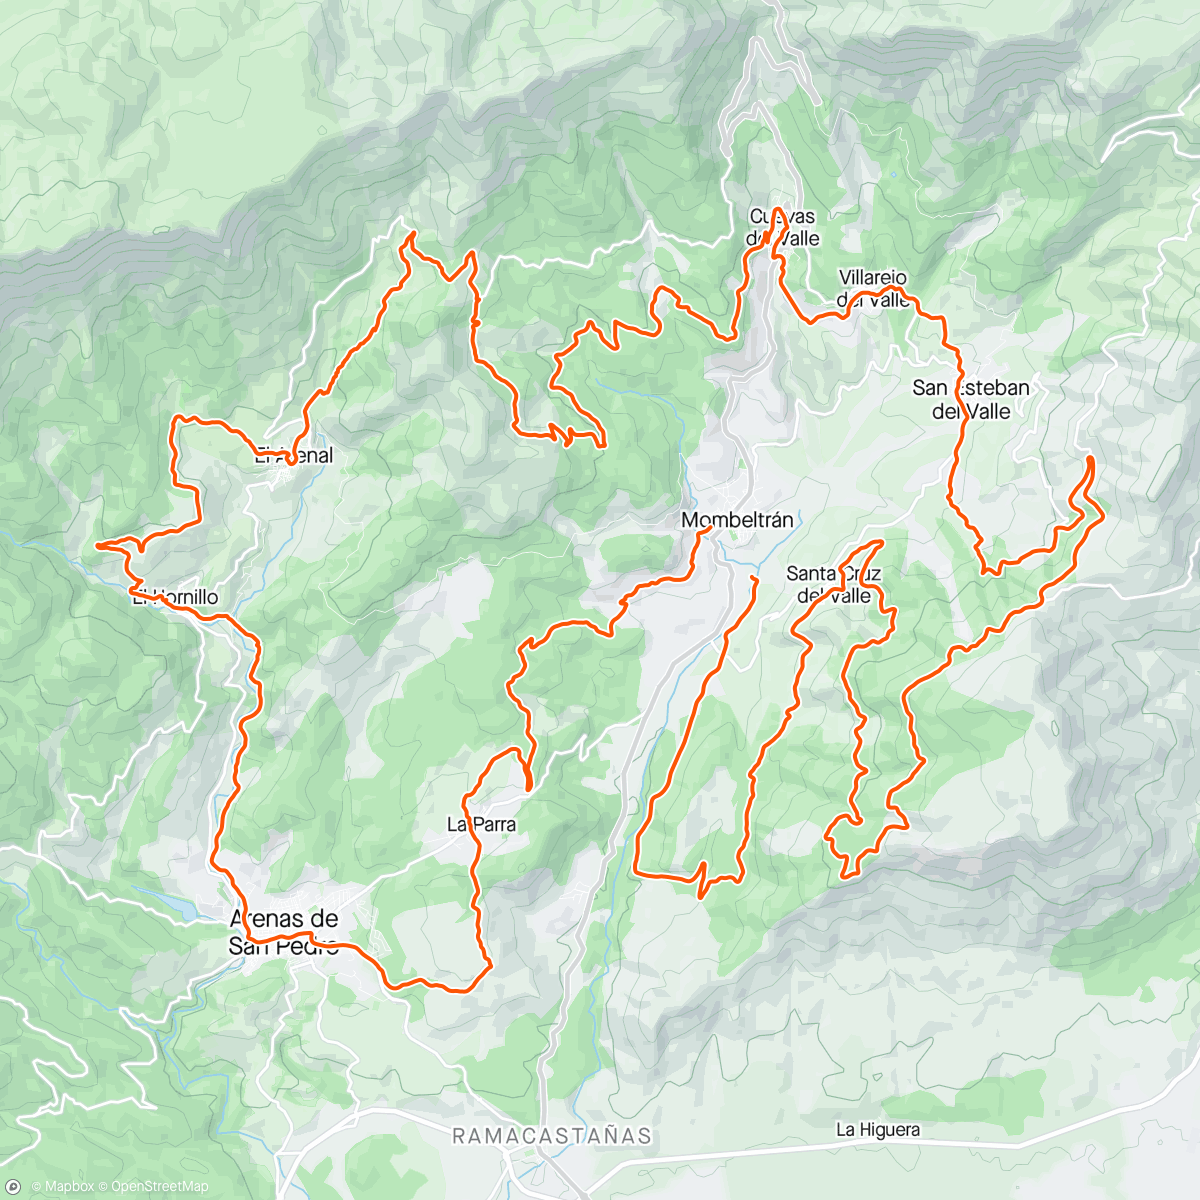 「Bajo Tietar 24」活動的地圖